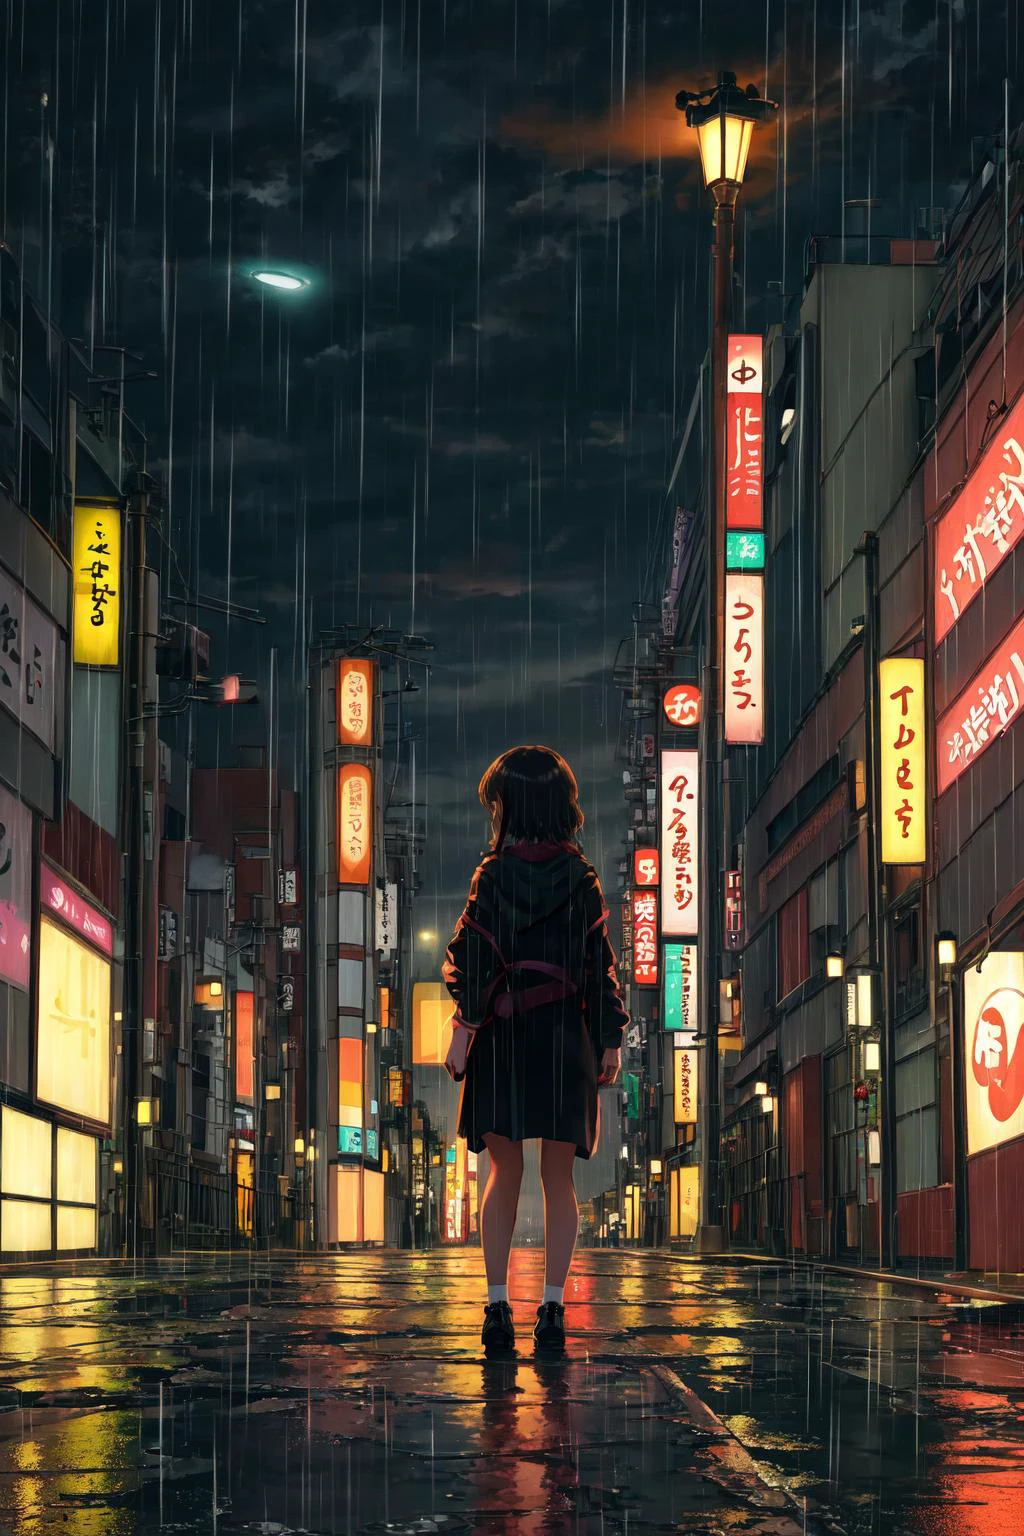 杰作,最好的质量,1女孩,独自的,看着观众,深夜, 东京, 荒废的街道, 远景, 背景, 孤独, 雨, 路灯, 弱光,